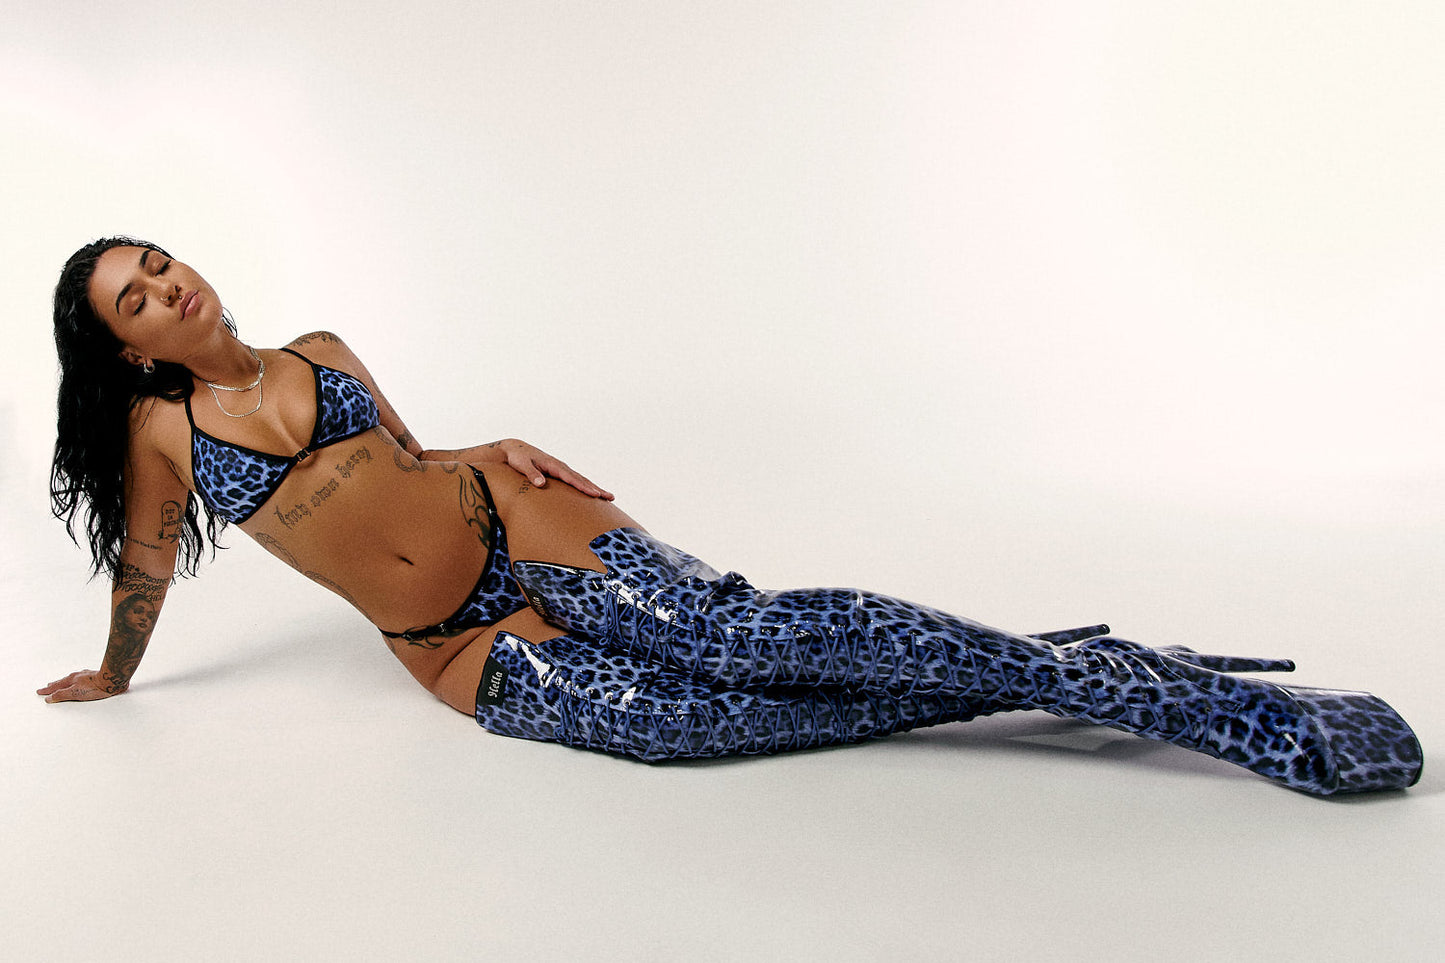 HOAH Bikini Clasp Miami Scrunch Bottoms - Blue Leopard